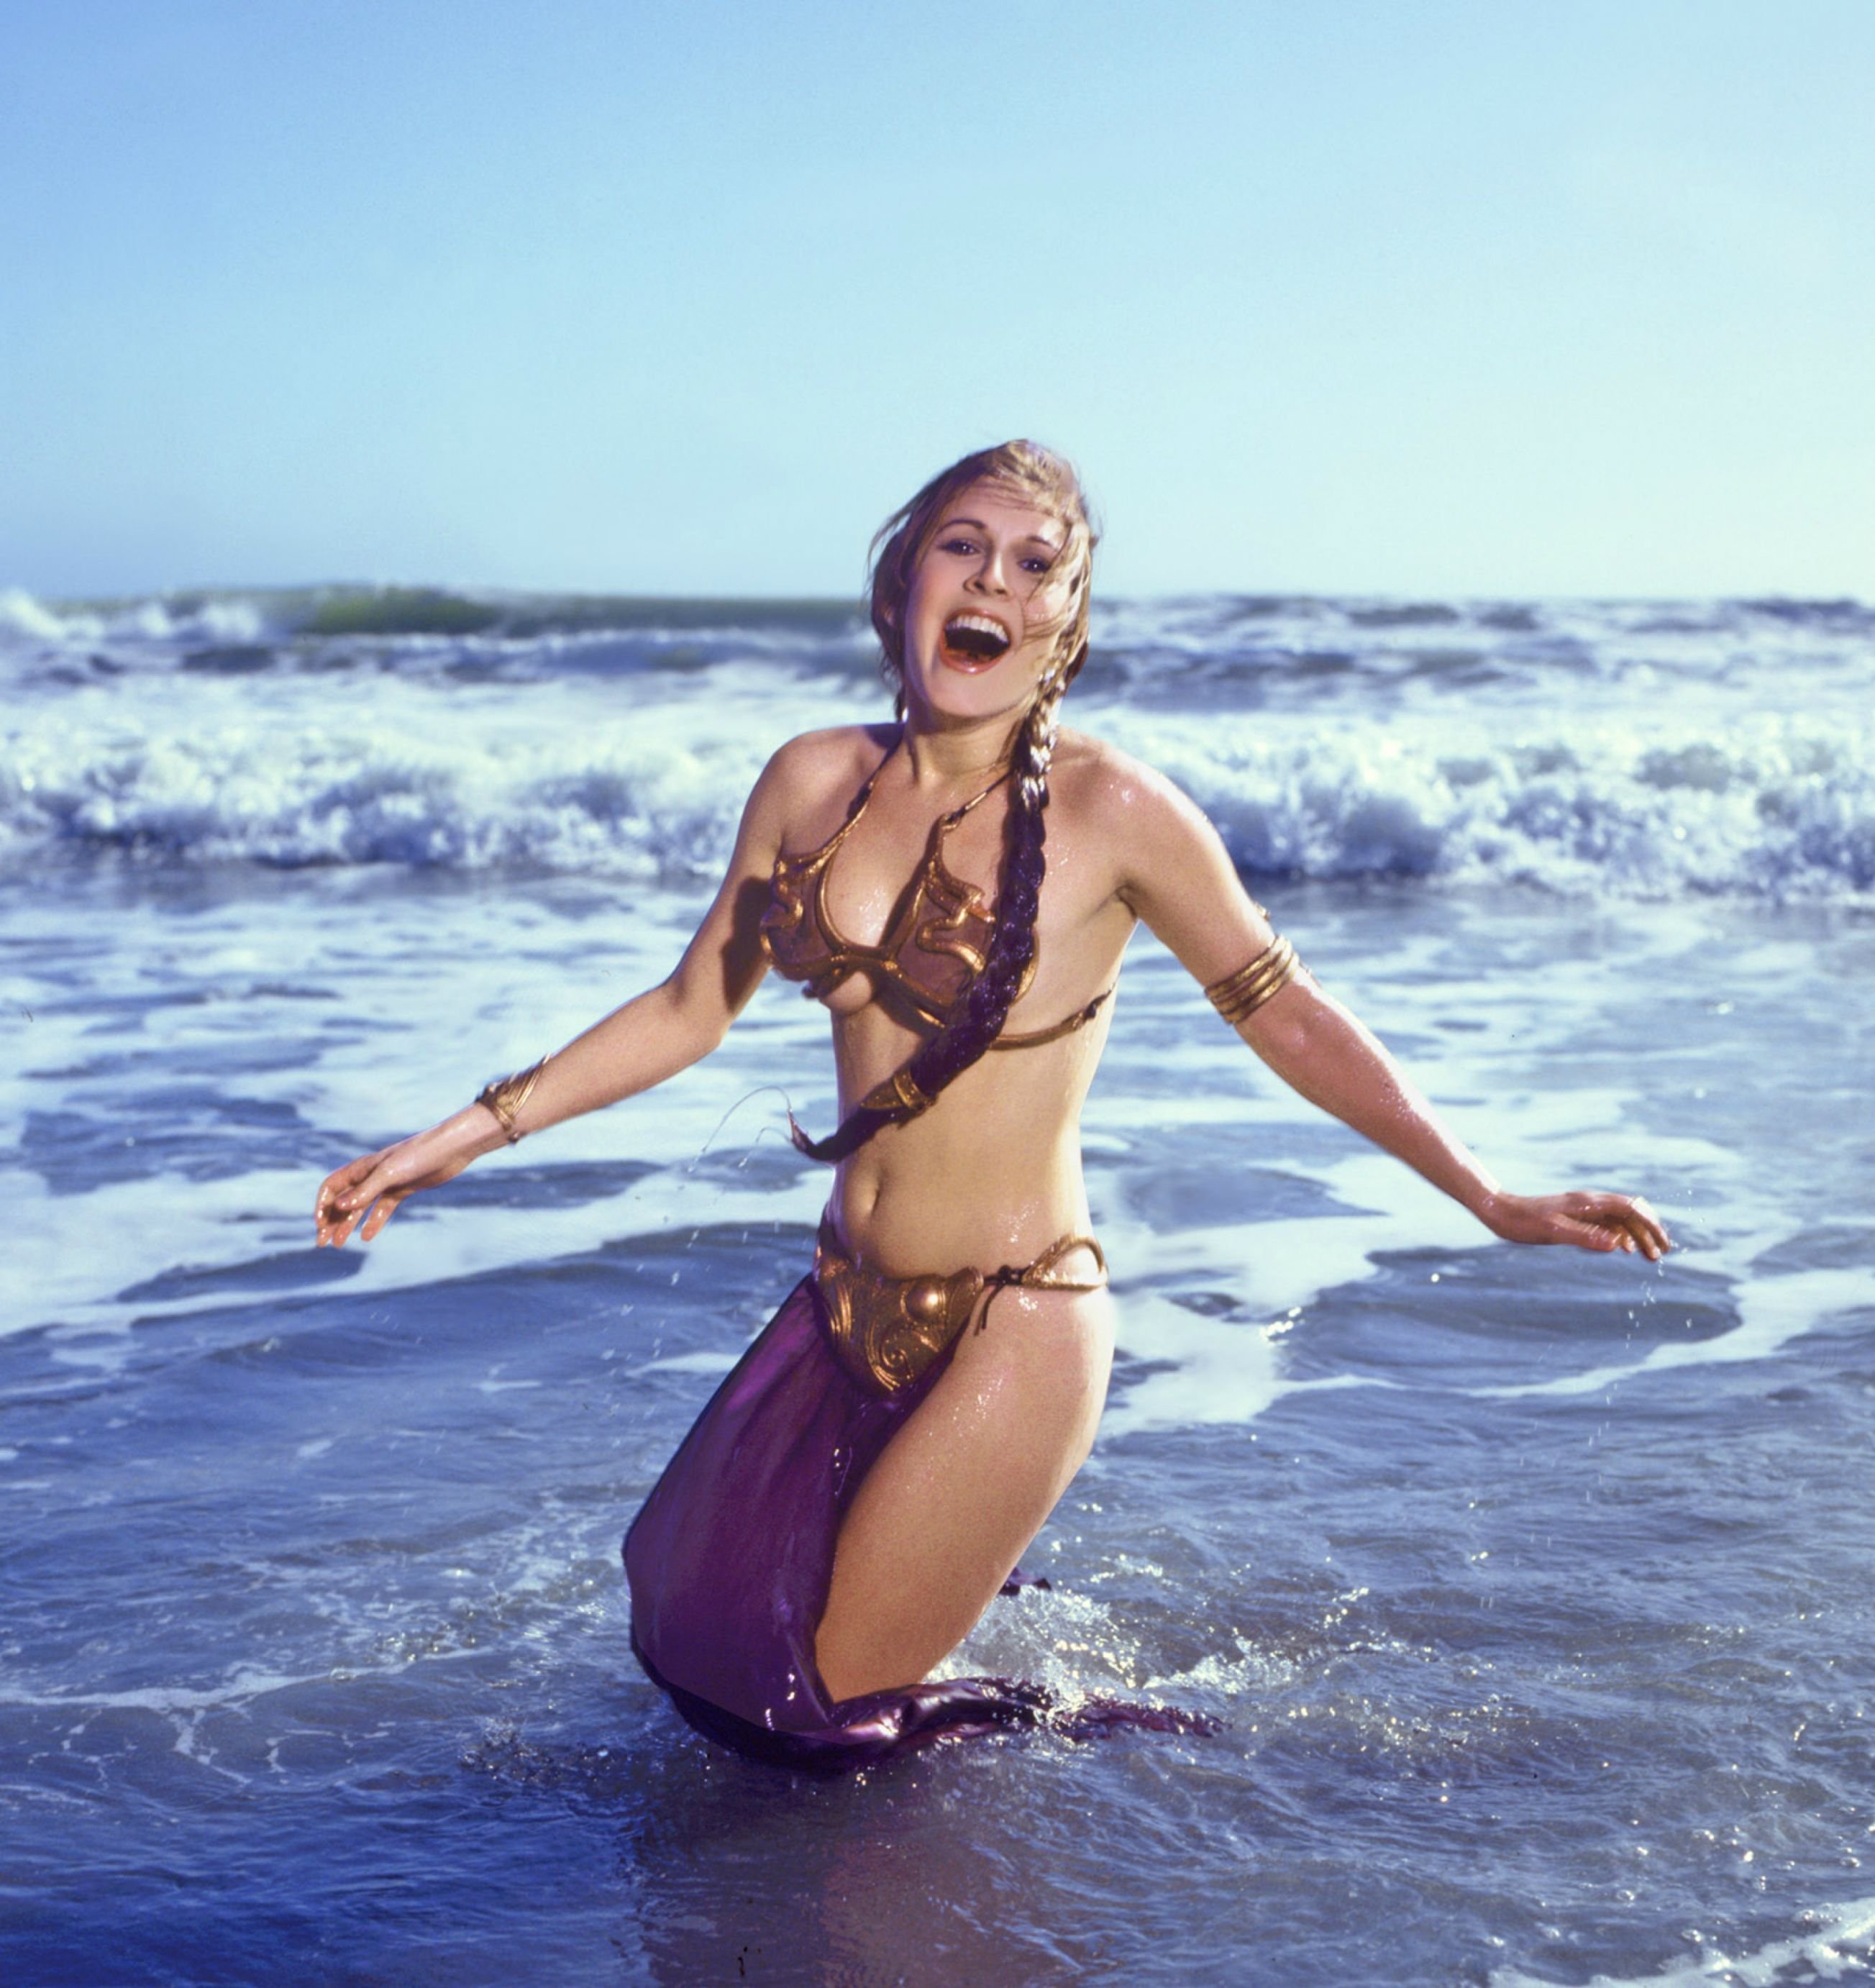 Carrie Fisher wearing metal bikini at the beach, 1983.